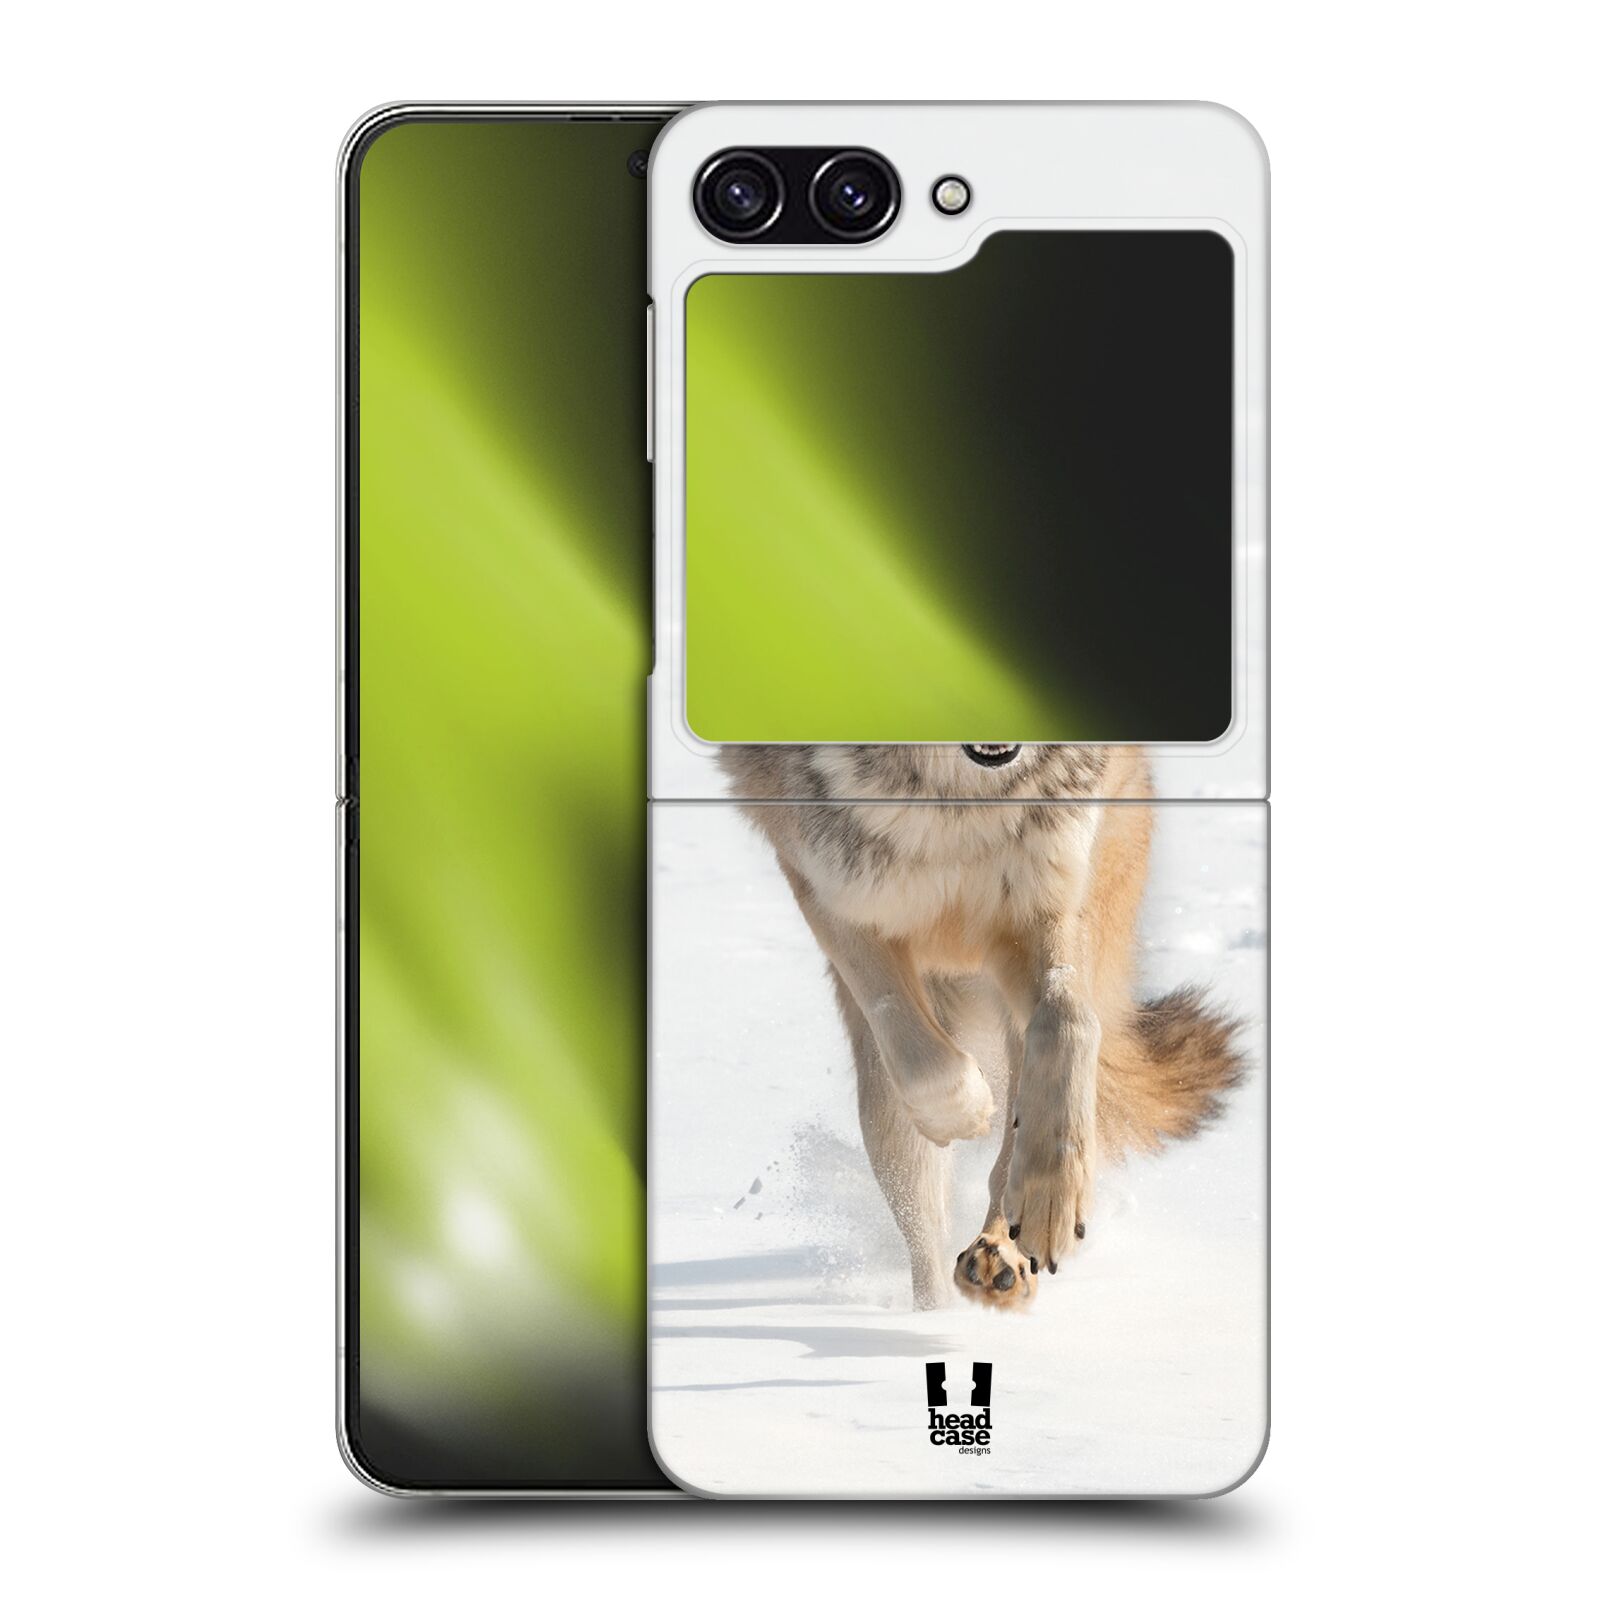 Plastový obal HEAD CASE na mobil Samsung Galaxy Z Flip 5 vzor Divočina, Divoký život a zvířata foto BĚŽÍCÍ VLK